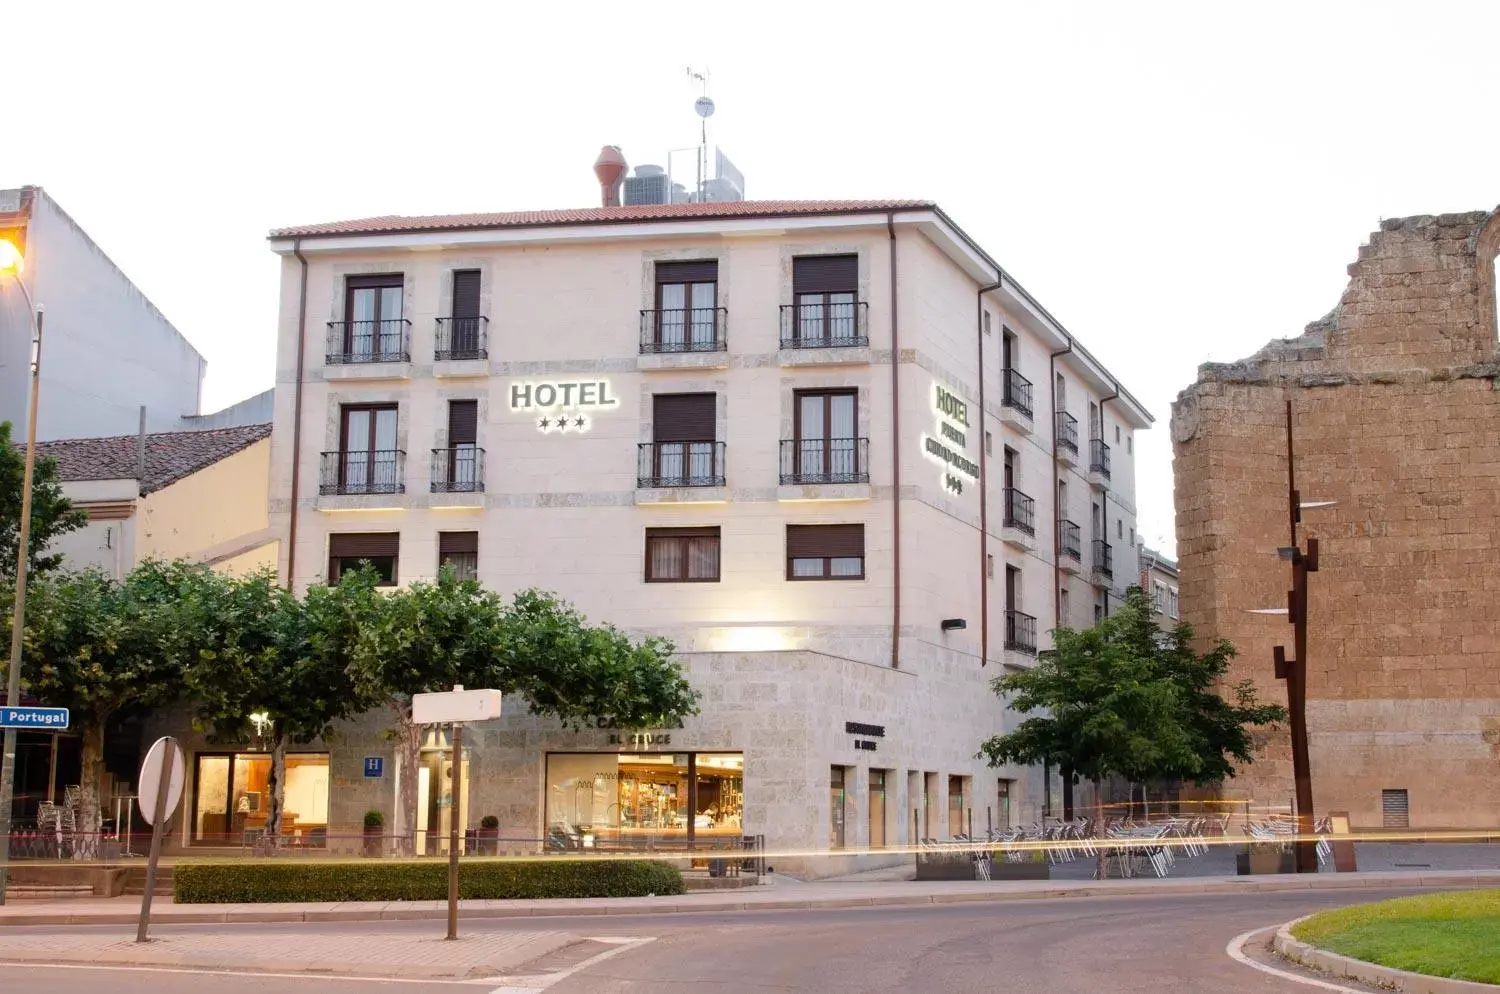 Property building in Hotel Puerta Ciudad Rodrigo